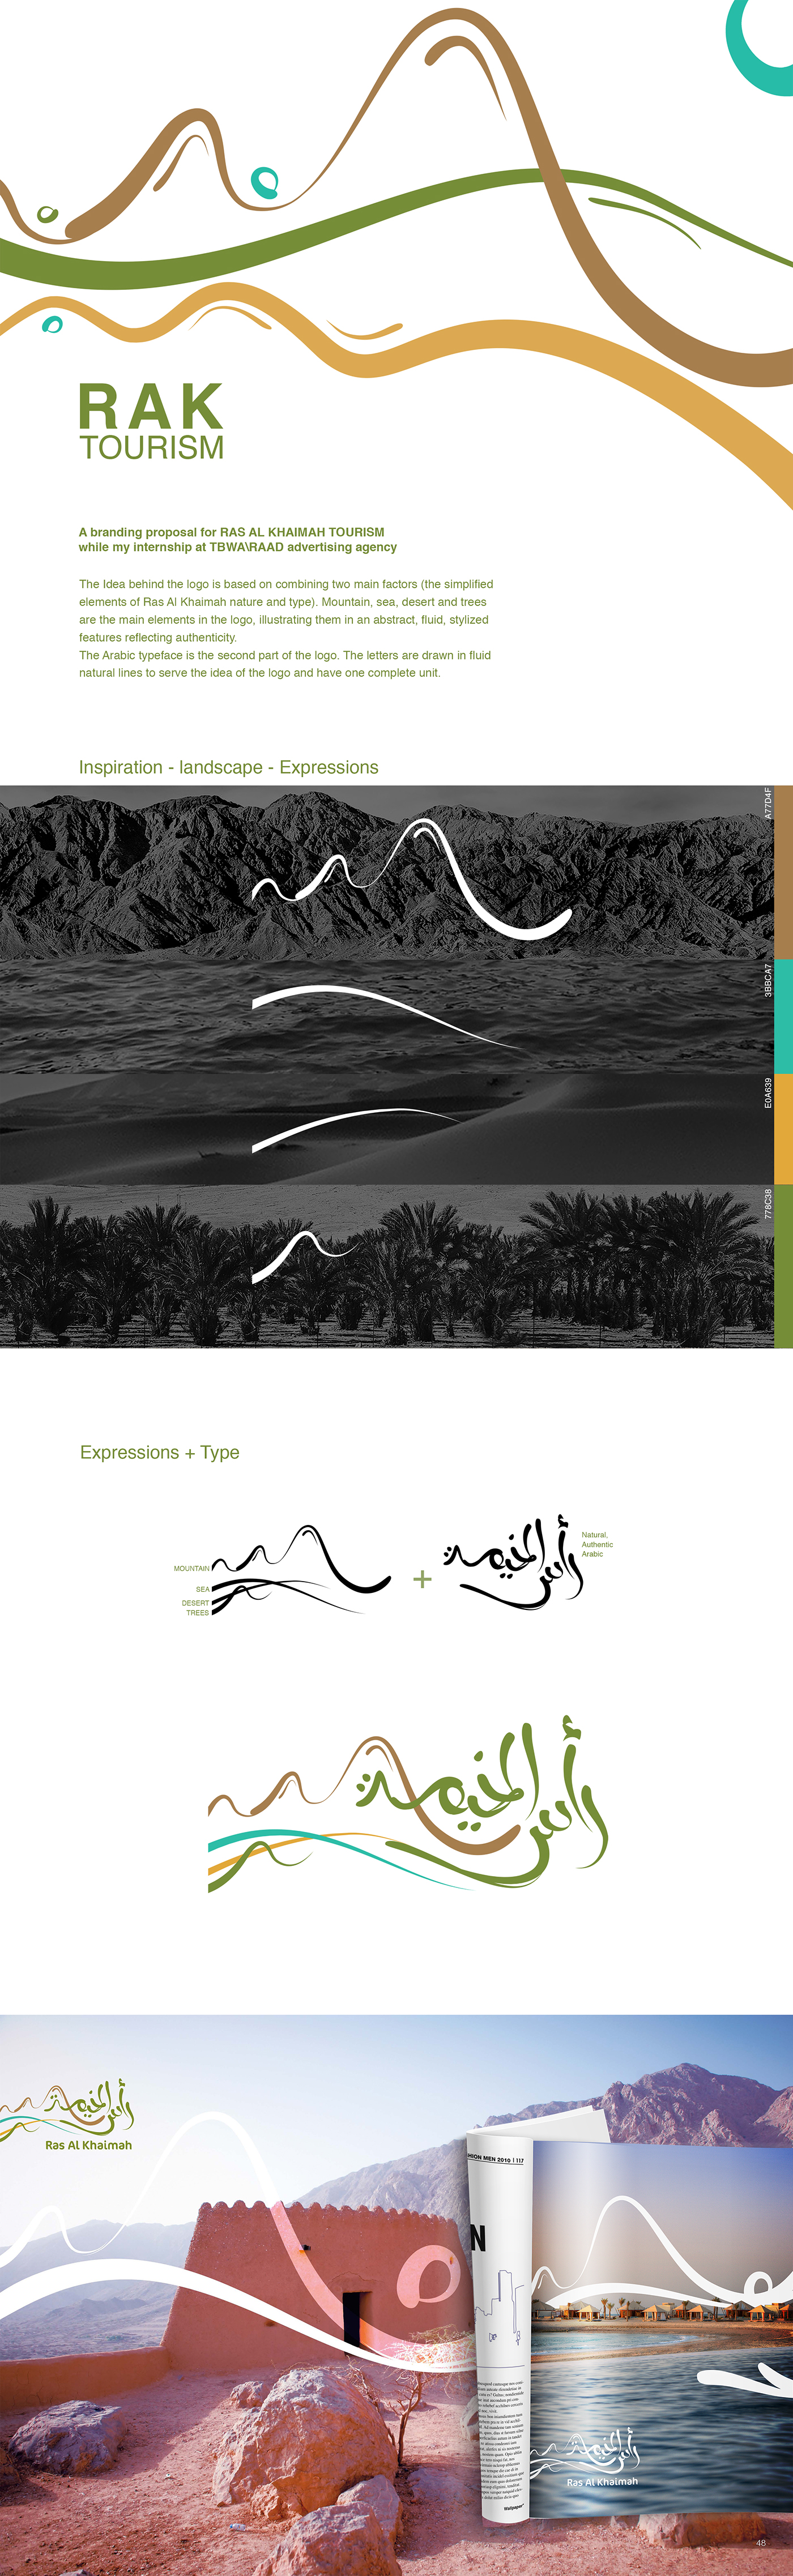 branding  logo graphic design  campaign tourism Nature colors rak fluid lines